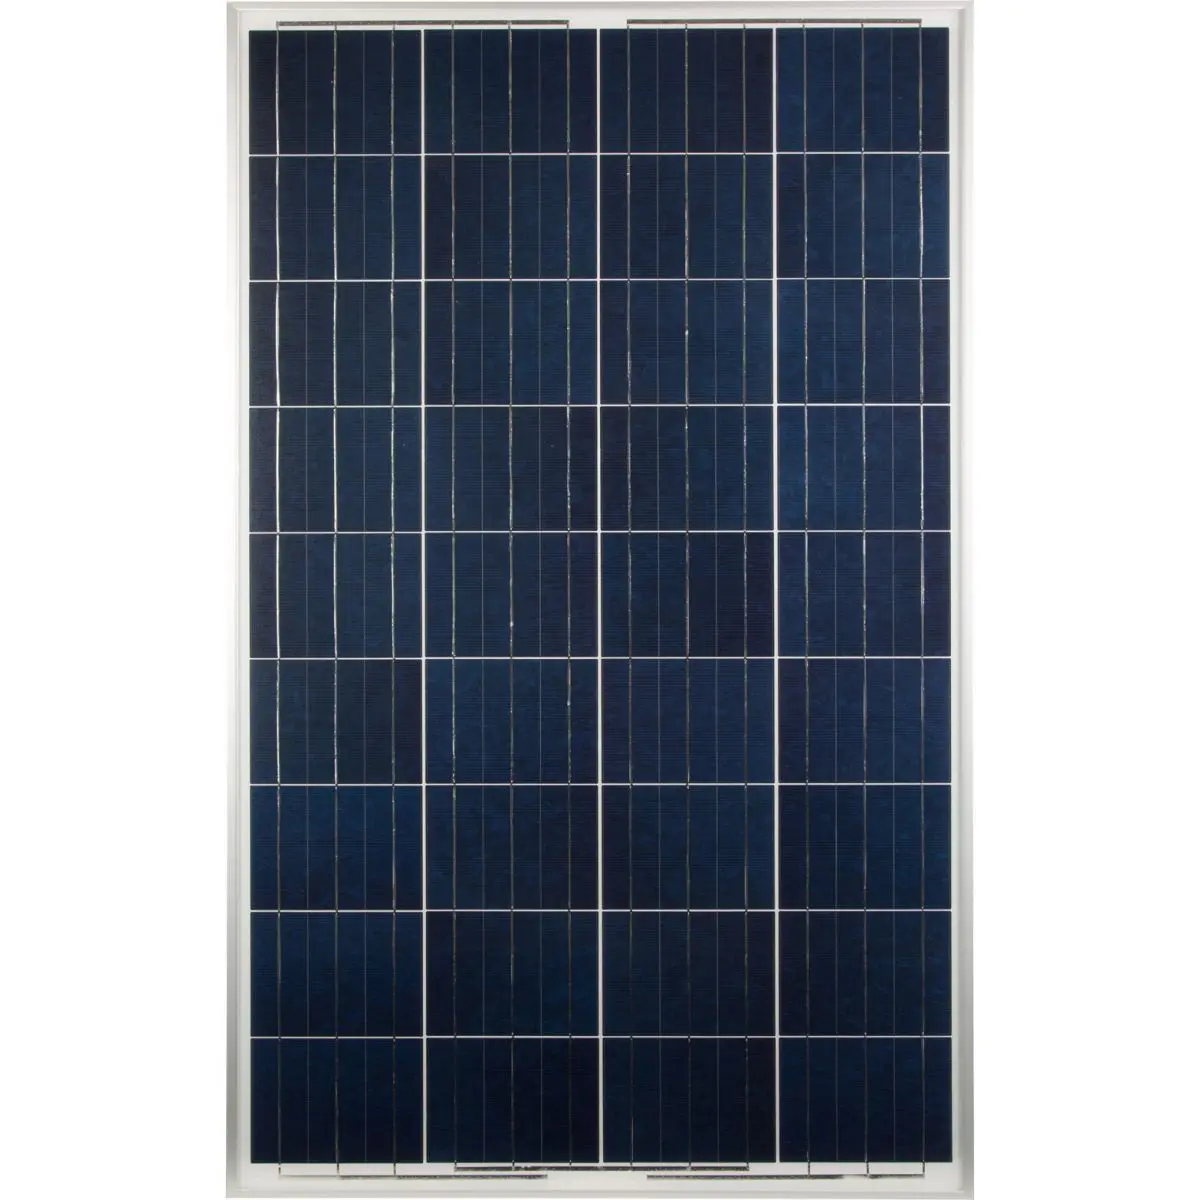 Solárny panel FF - FF 105